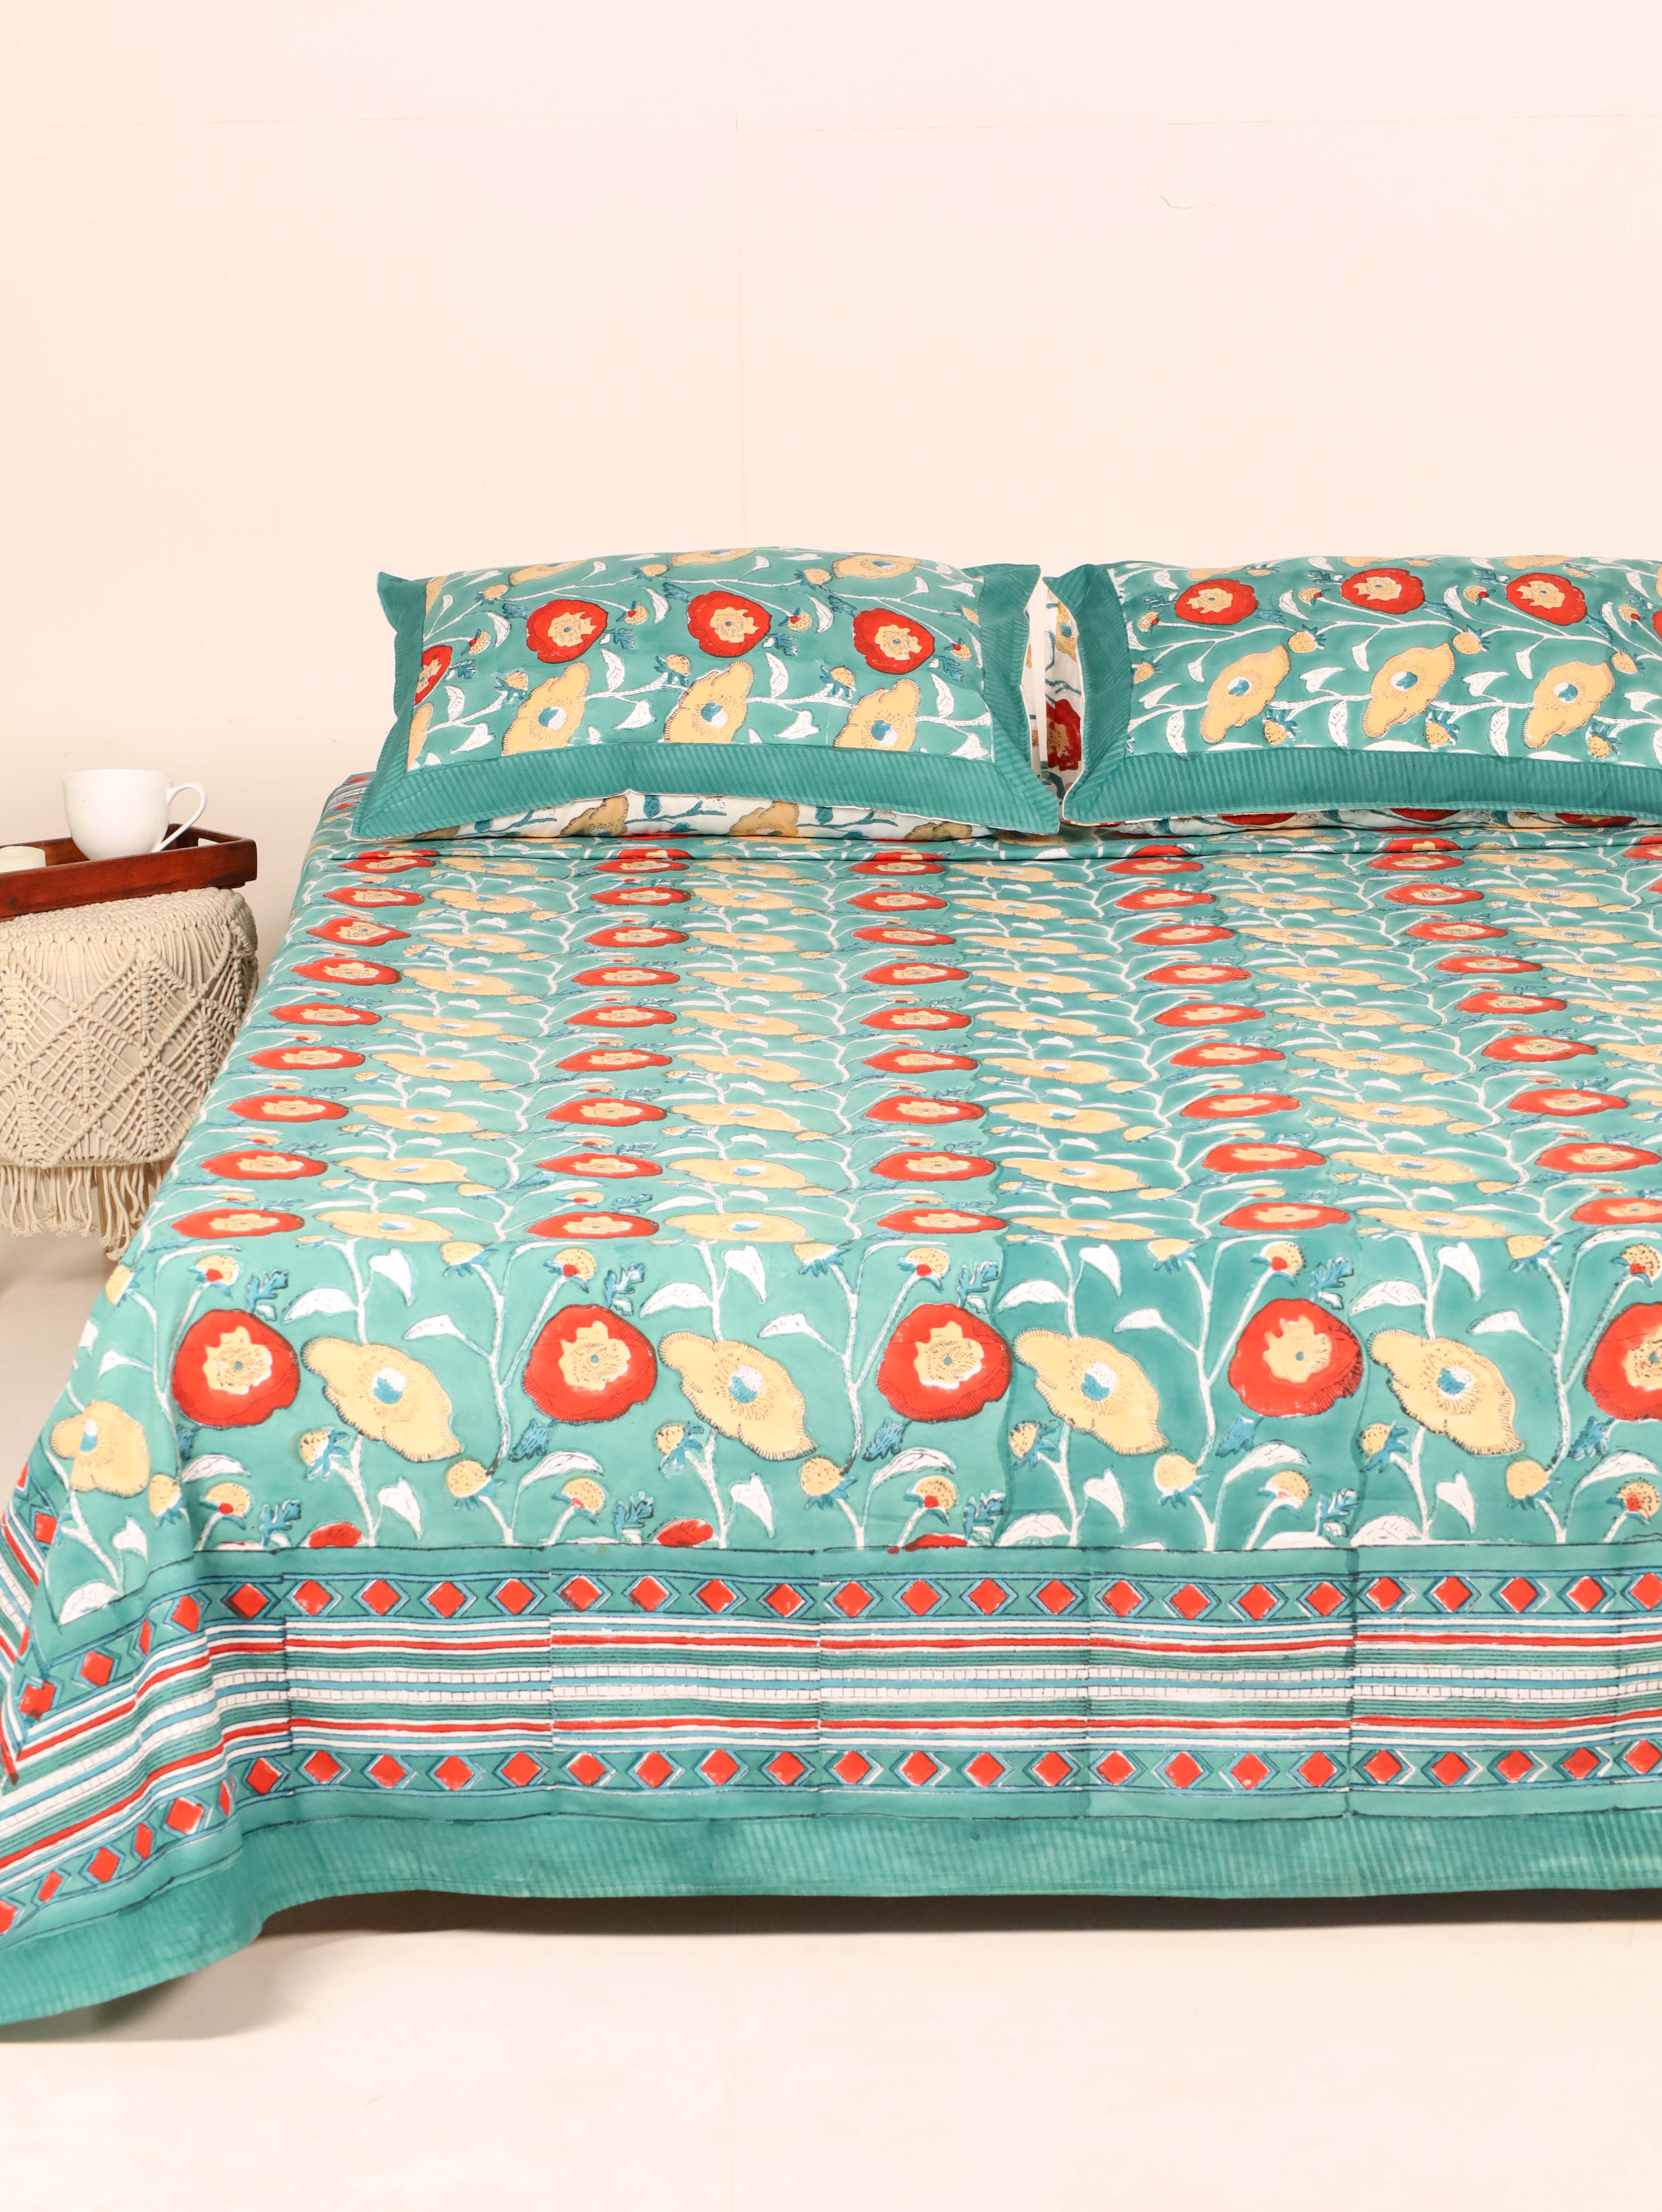 Turquoise Blooms Handblock Printed Cotton Bedsheet - King